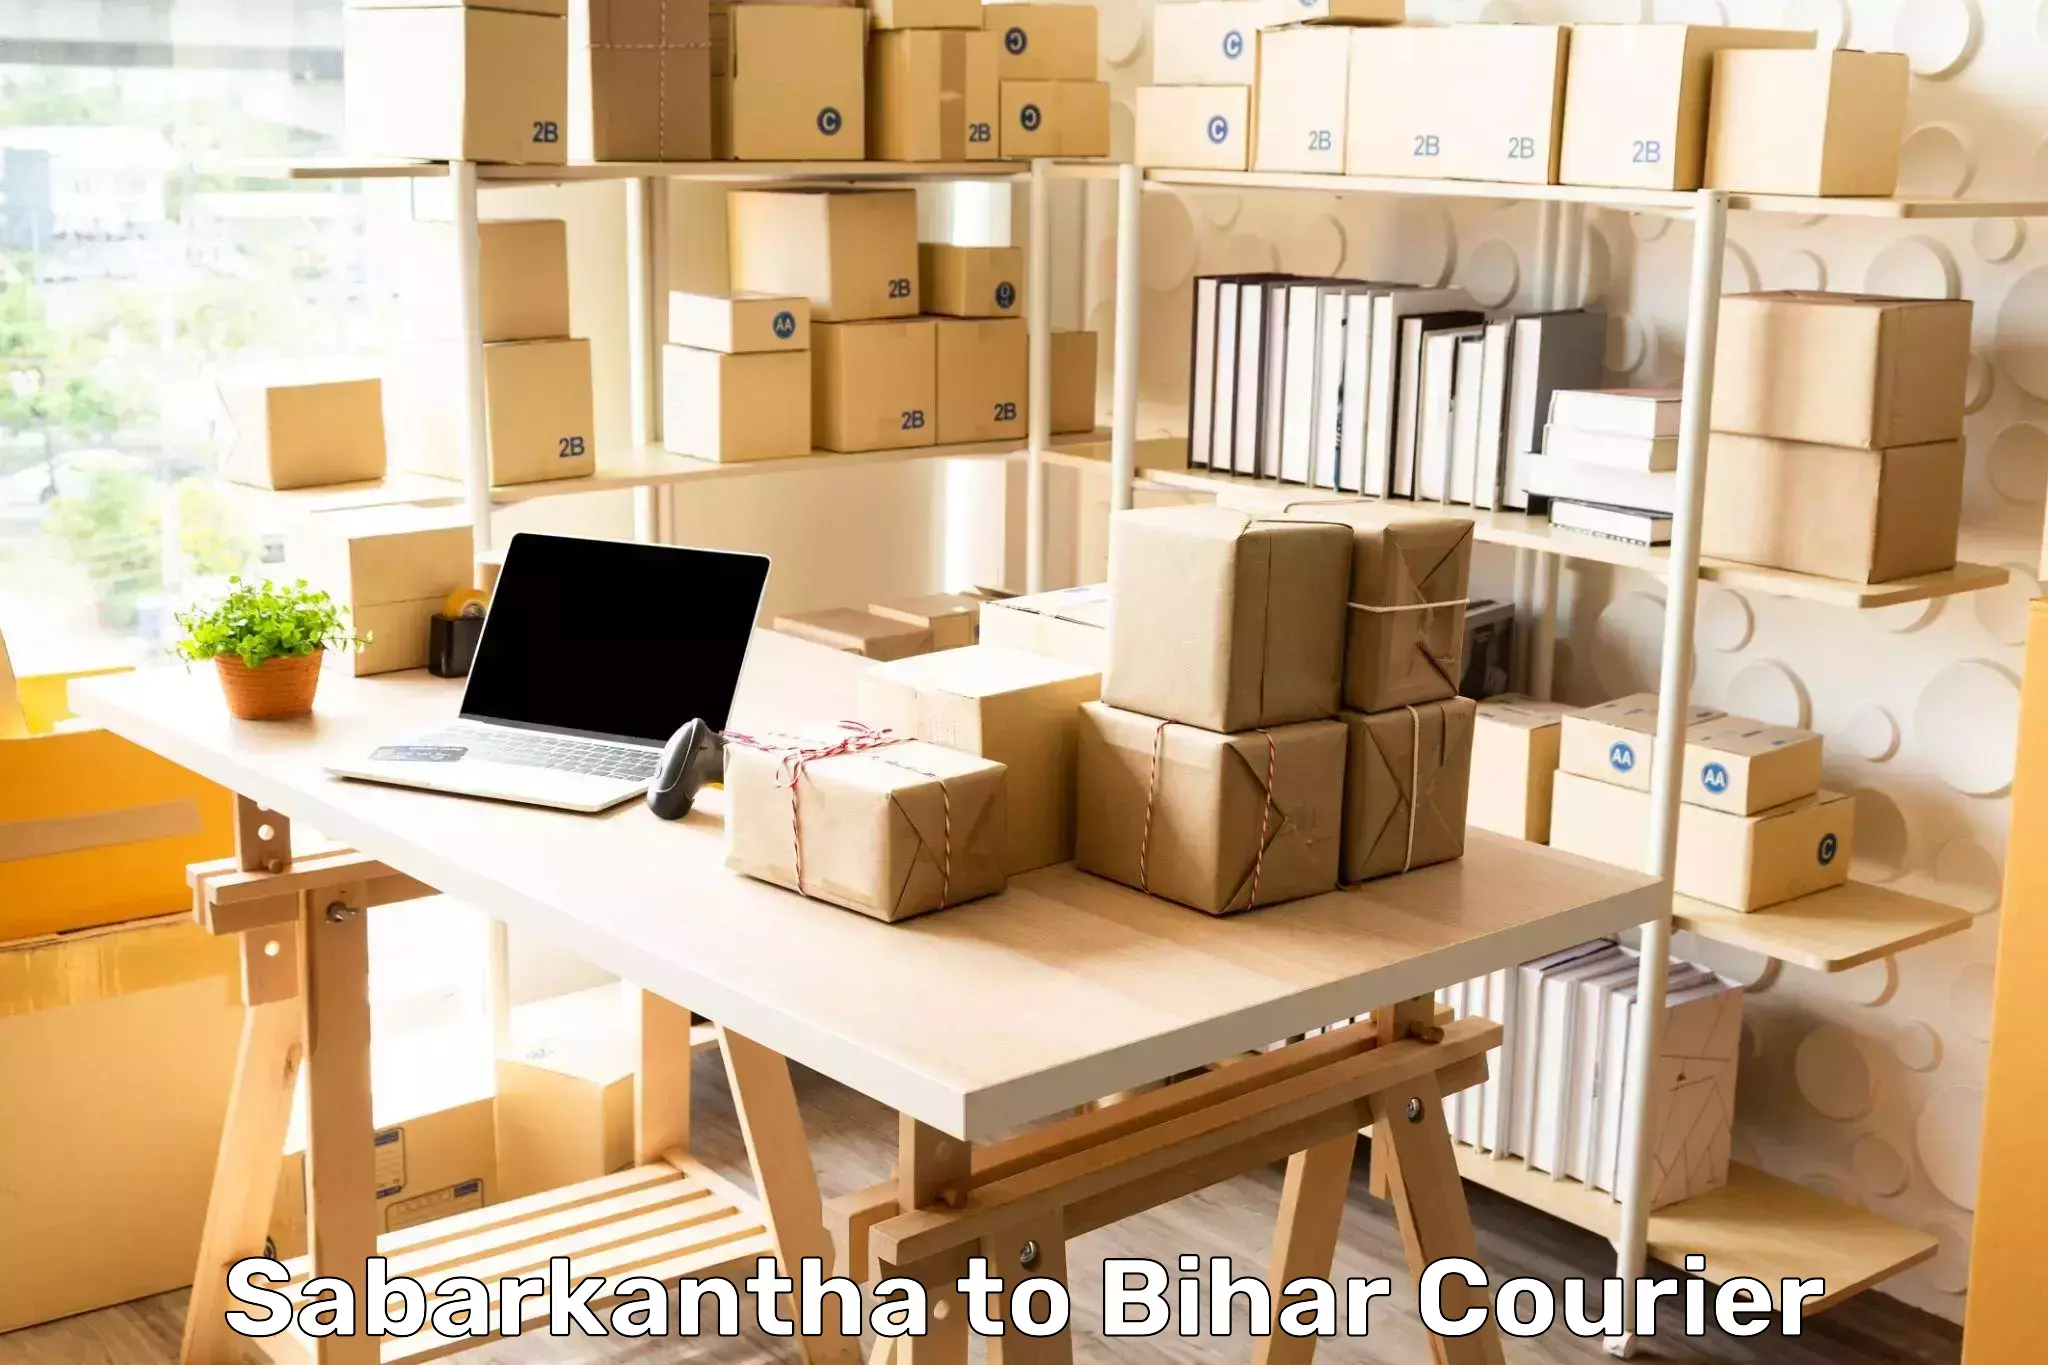 Global shipping networks Sabarkantha to Bihar